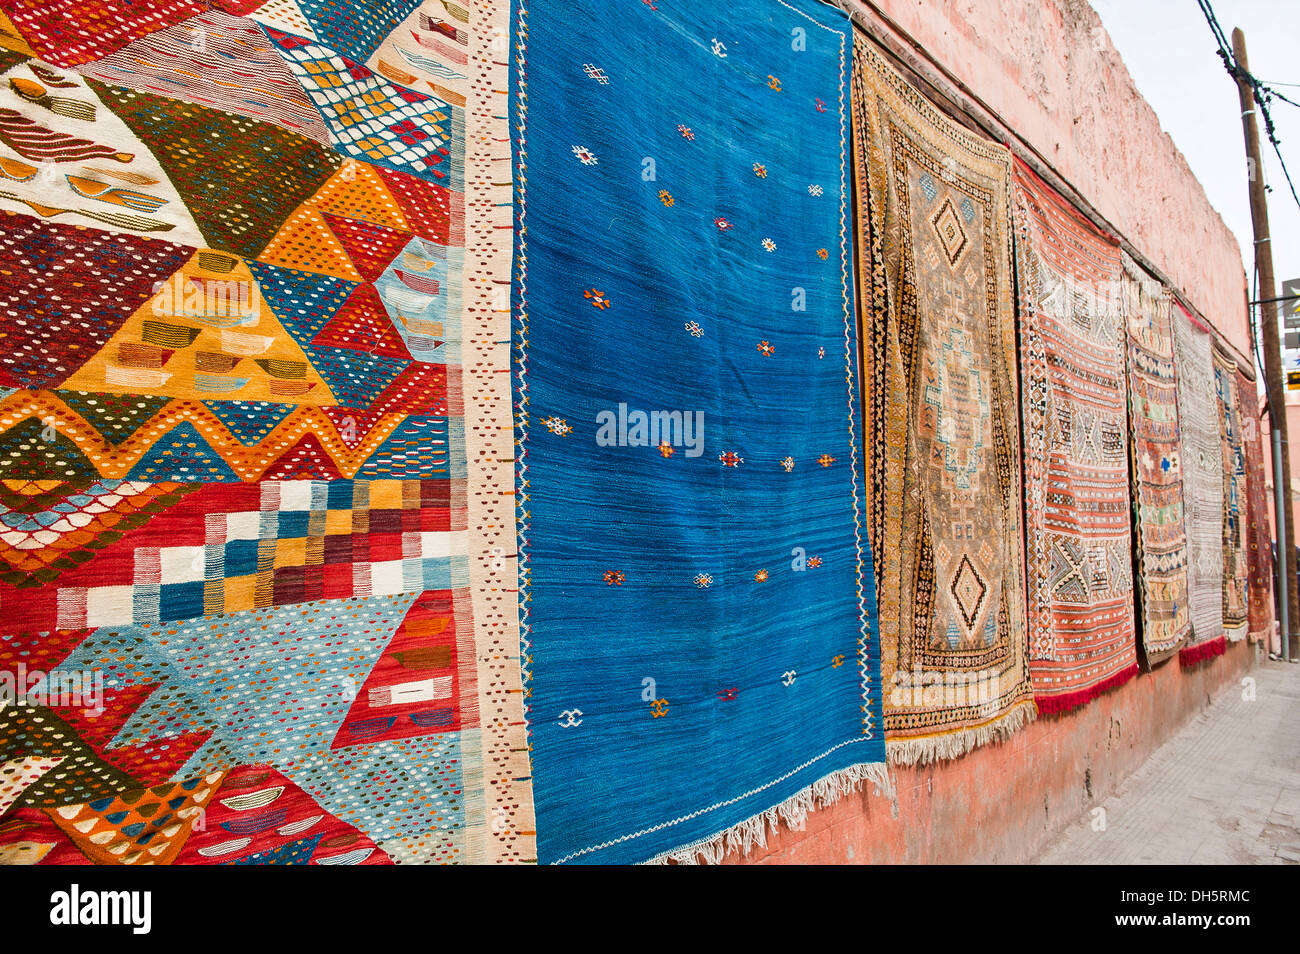 Des tapis avec des symboles arabes et berbères et les schémas, suspendu à une façade à vendre, Marrakech, Maroc, Afrique Banque D'Images